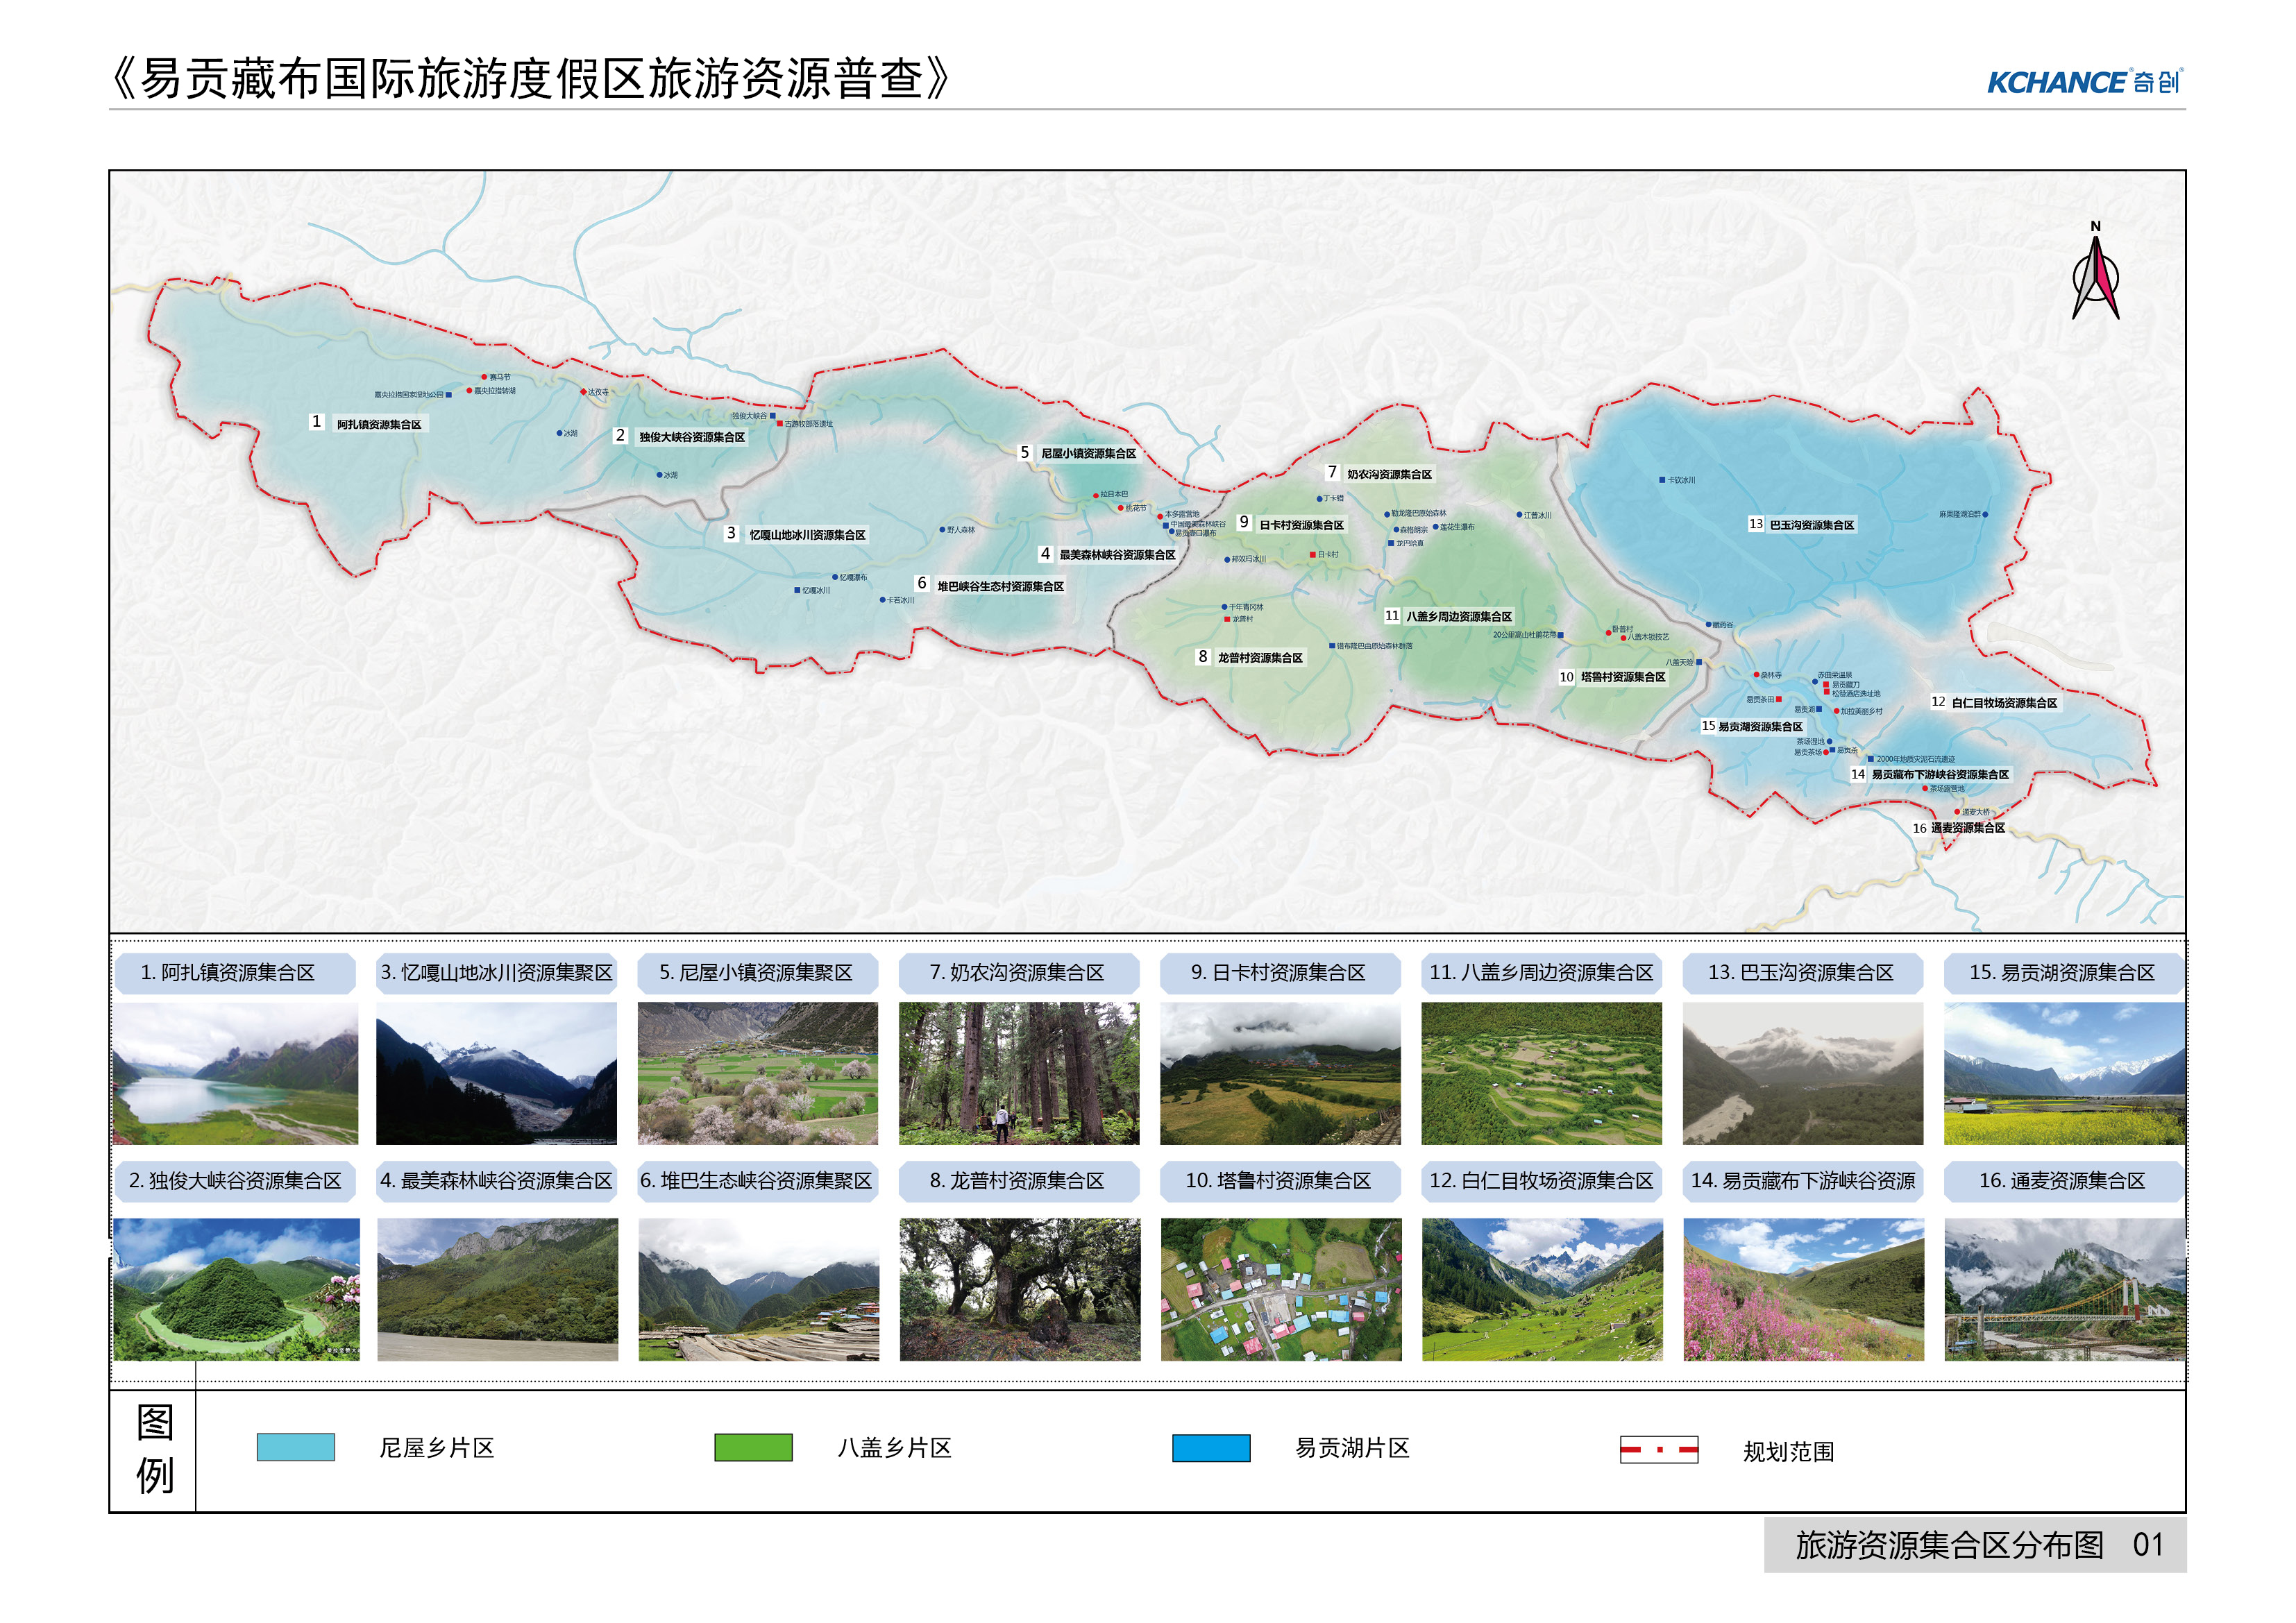 易贡藏布国际旅游度假区旅游发展总体规划 